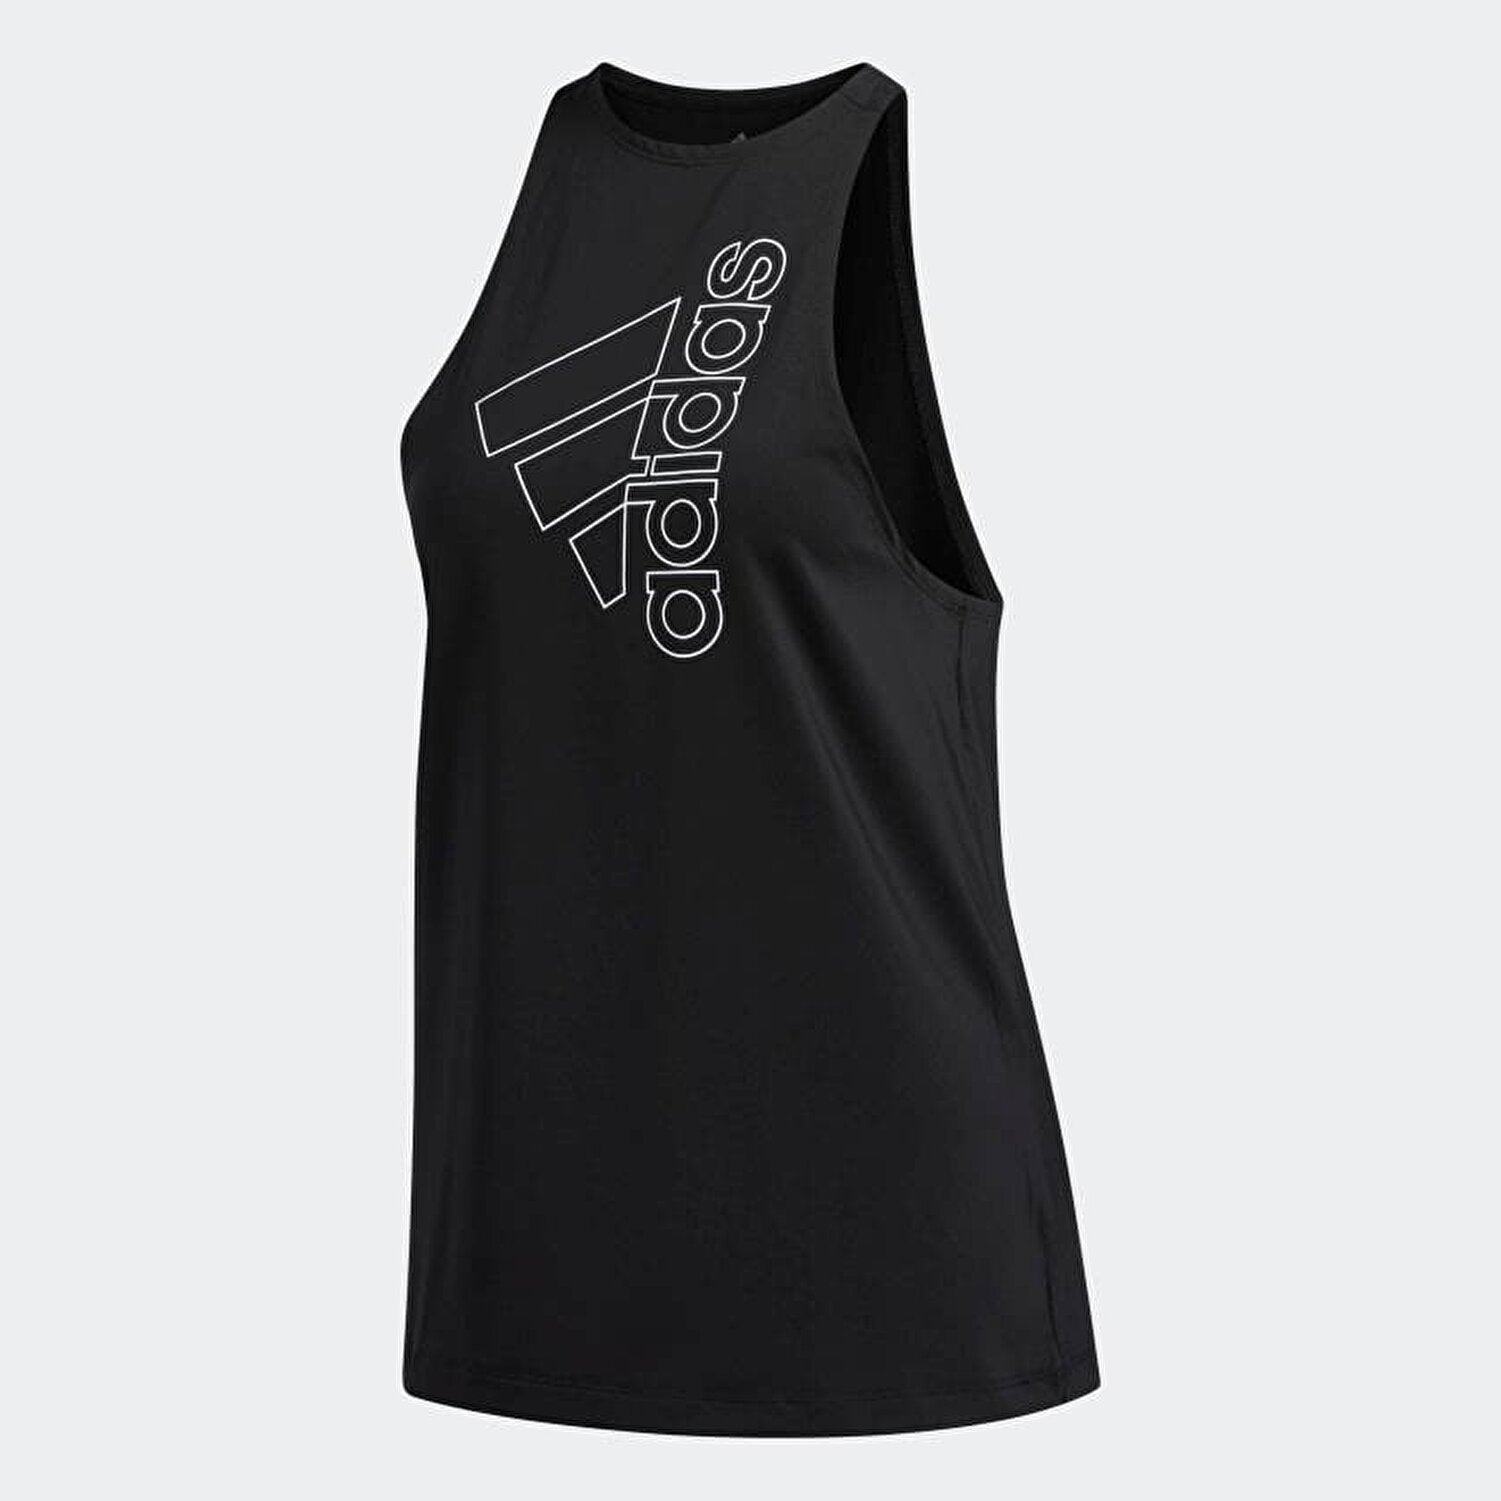 Adidas black AREOREADY womens training tank top